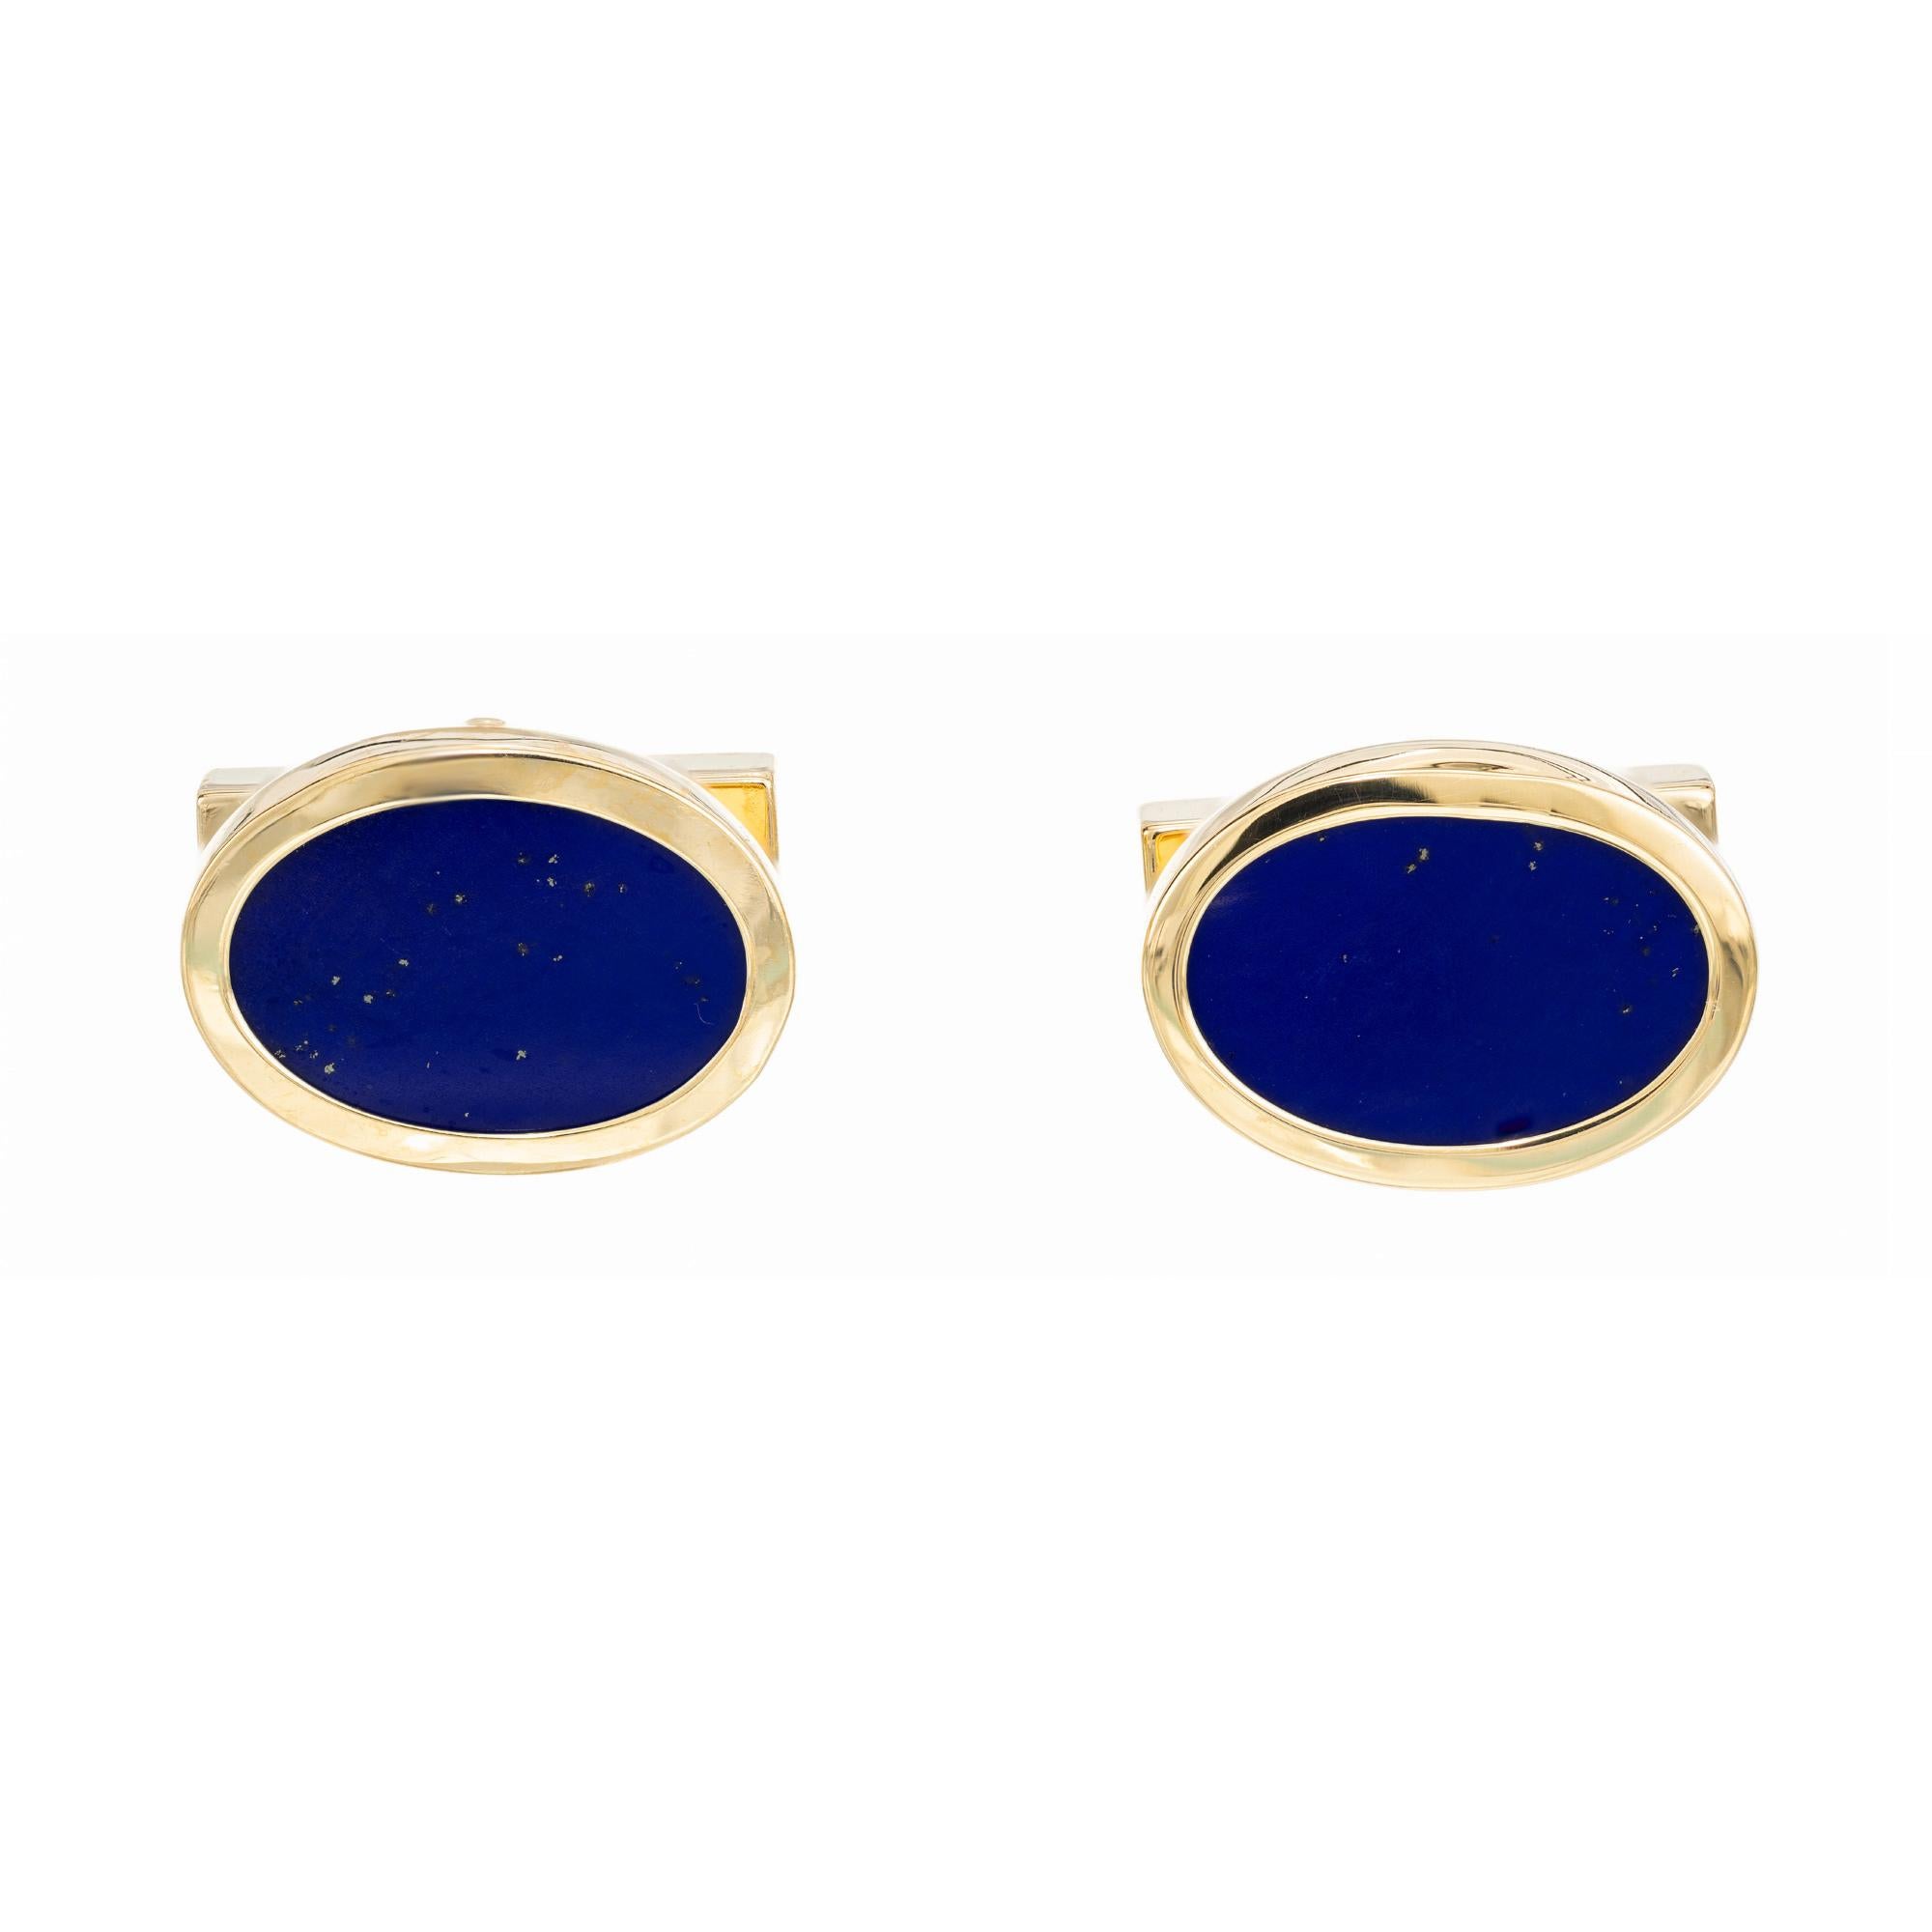 Boutons de manchette Tiffany & Co Lapis en or 18k. En or jaune 18 carats, 2 Lapis Lazuli ovales d'un bleu profond sont sertis. Boutons de manchette pour hommes, datant des années 1980. 

2 plaques ovales de lapis-lazuli bleu, 15mm x 10mm
Or jaune